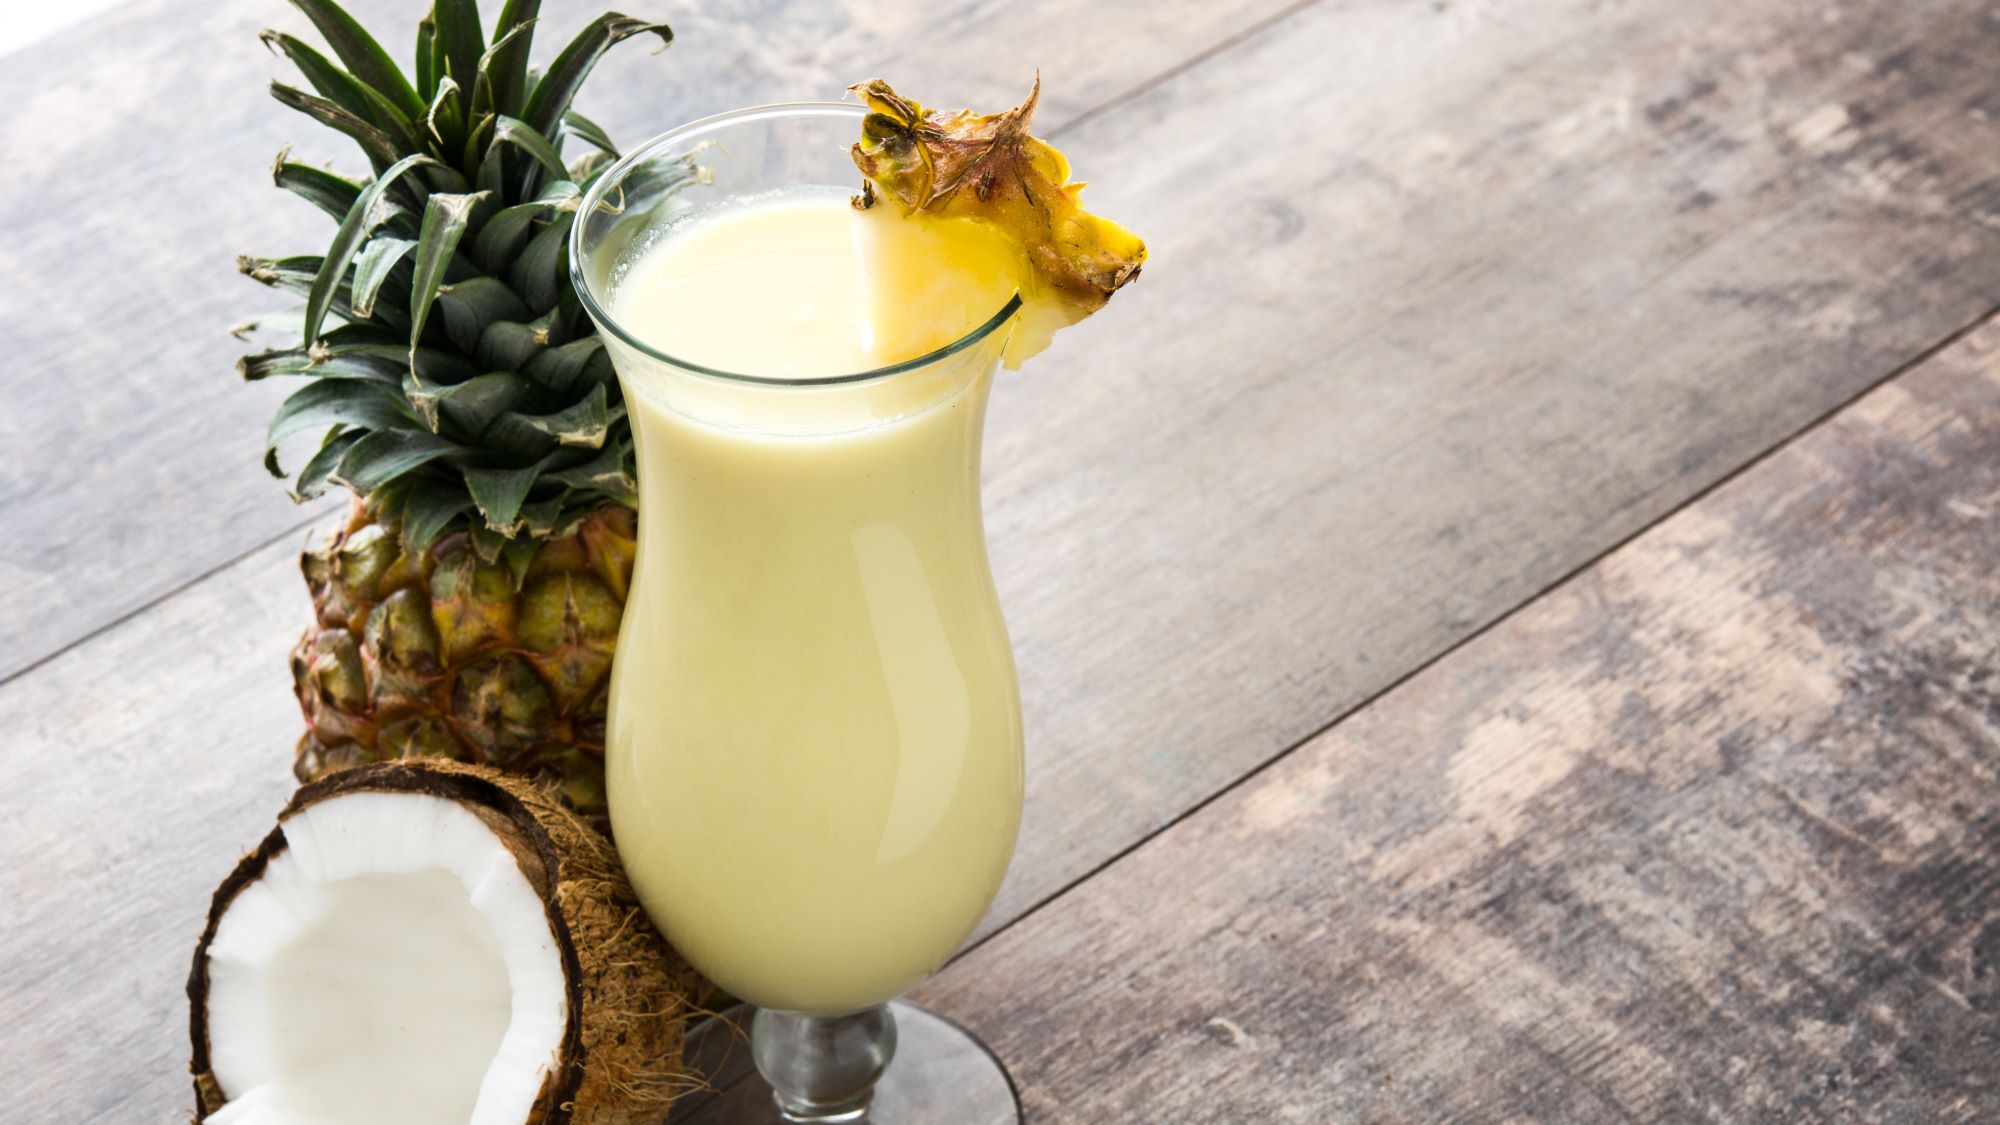 Erfrischender Coconut Kiss Cocktaill mit Ananasscheibe in einem hohen Glas, umgeben von einer Ananas und einer halben Kokosnuss.